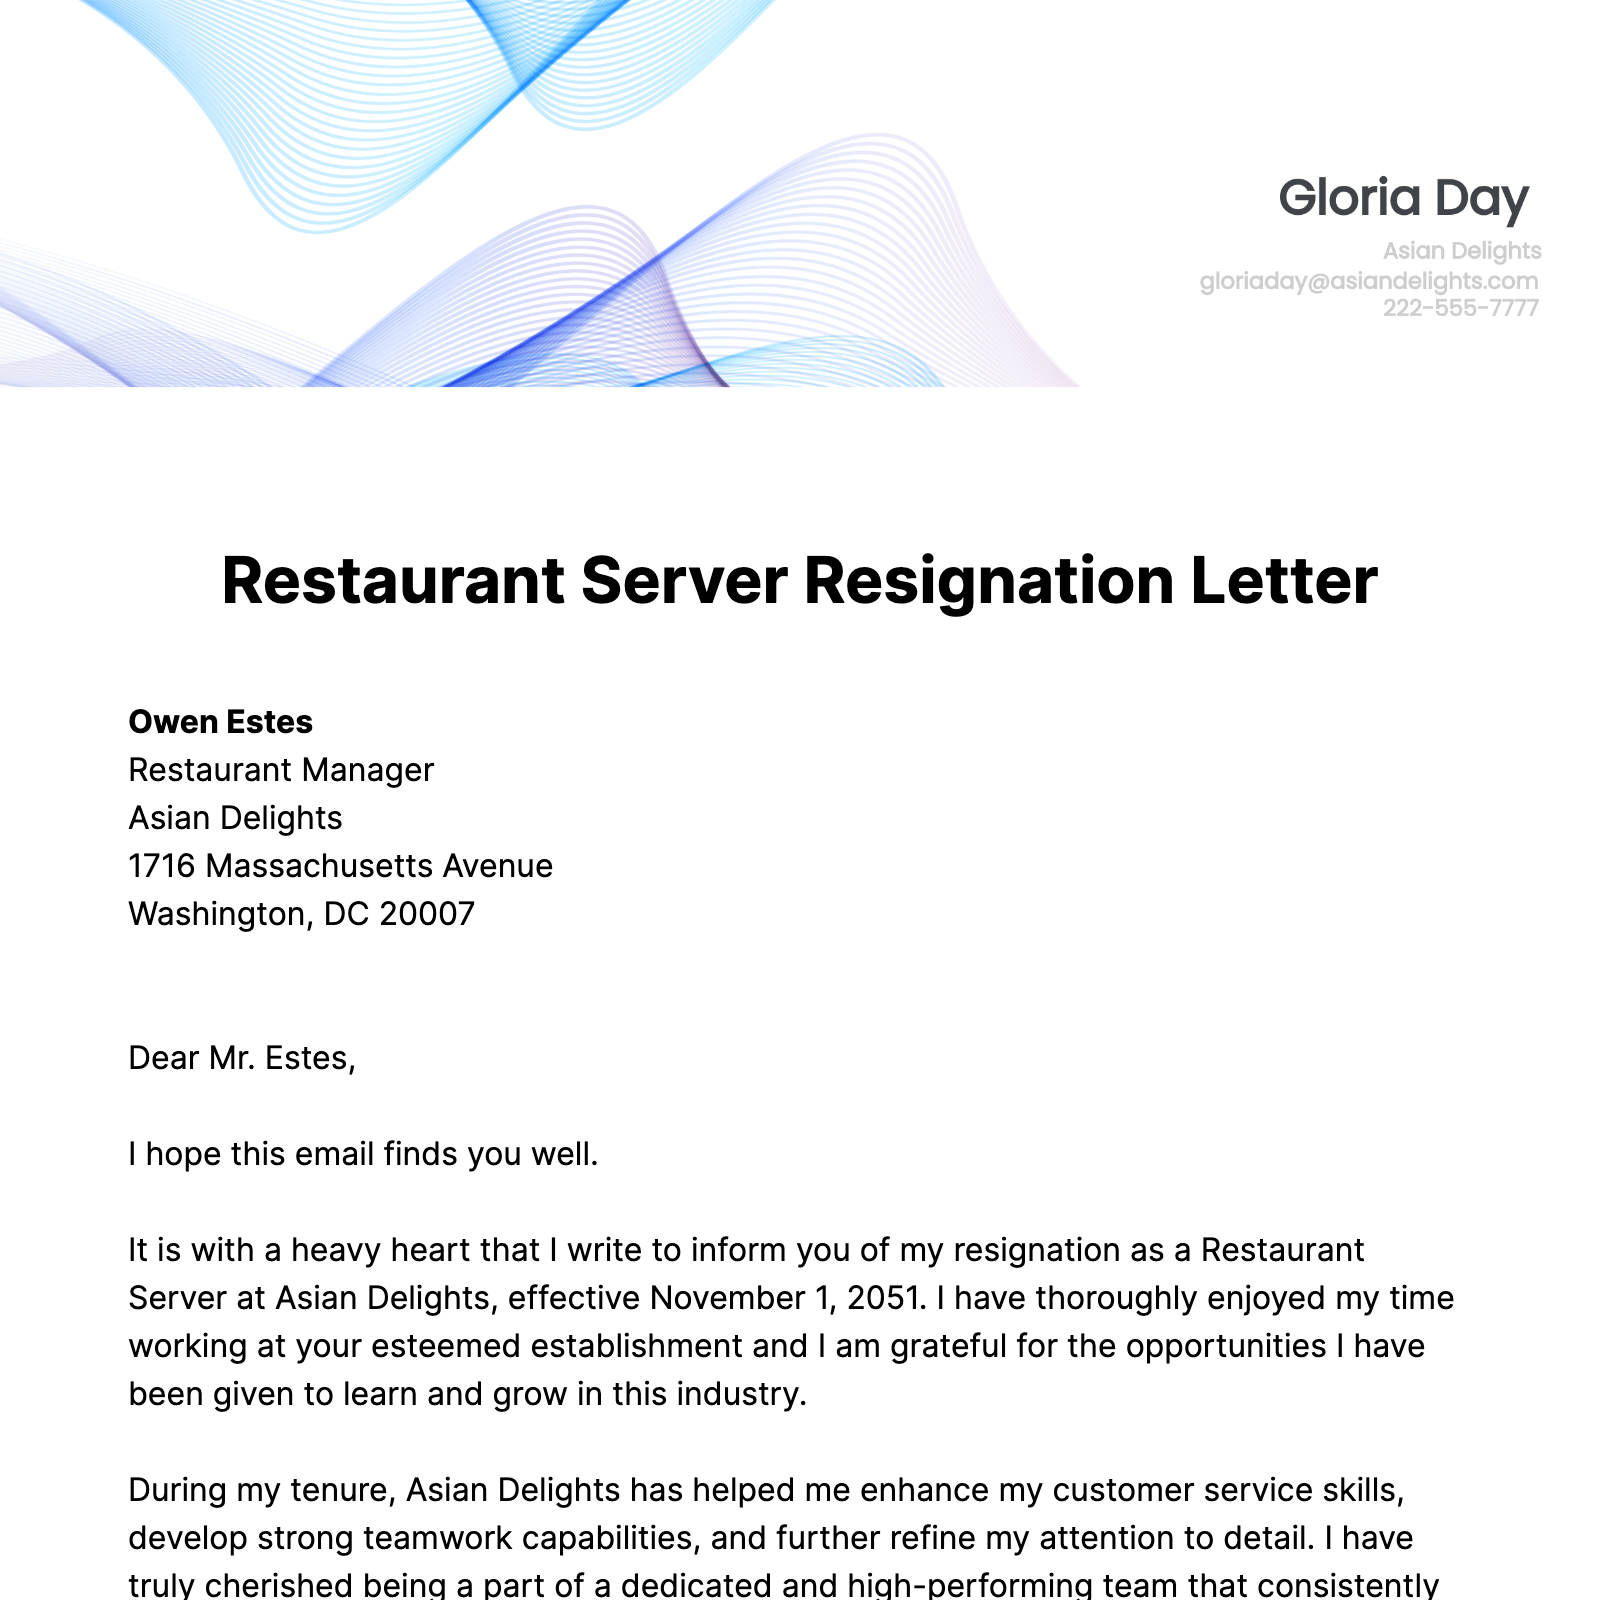 Restaurant Server Resignation Letter  Template